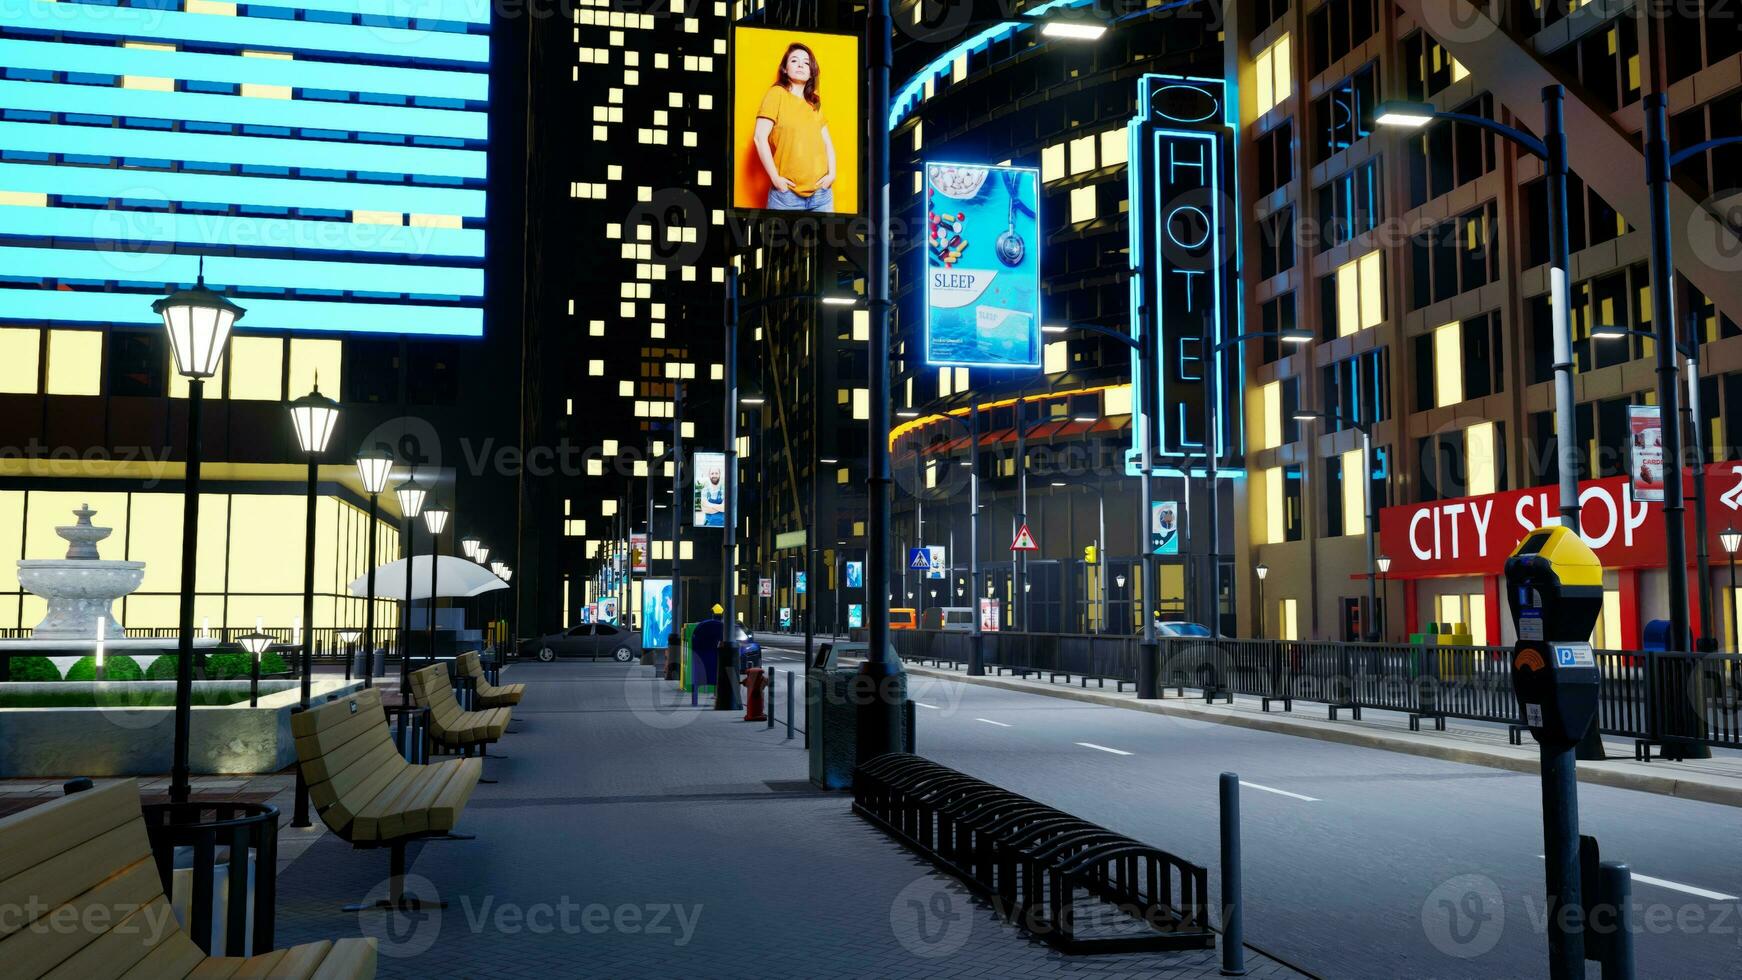 urbano ciudad centrar a noche con carros conducción pasado rascacielos vacío metropolitano pueblo con calles iluminado por al aire libre publicidad y lámpara publicaciones, 3d hacer animación foto